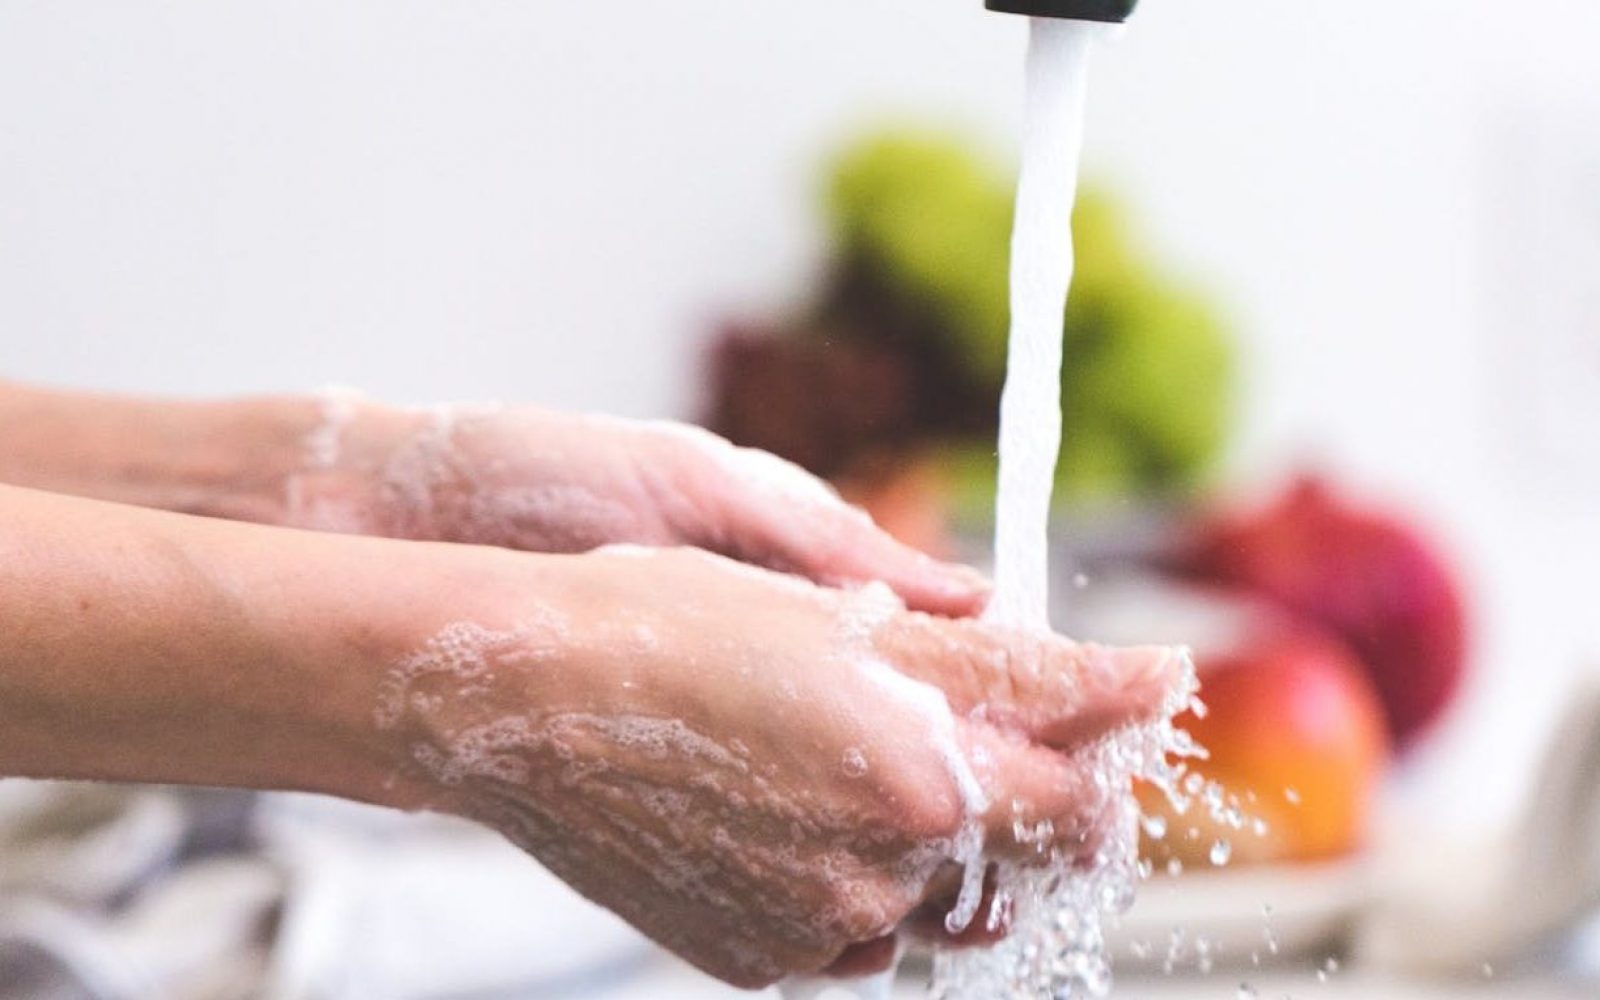 Pravilna higiena rok preprečuje bolezni